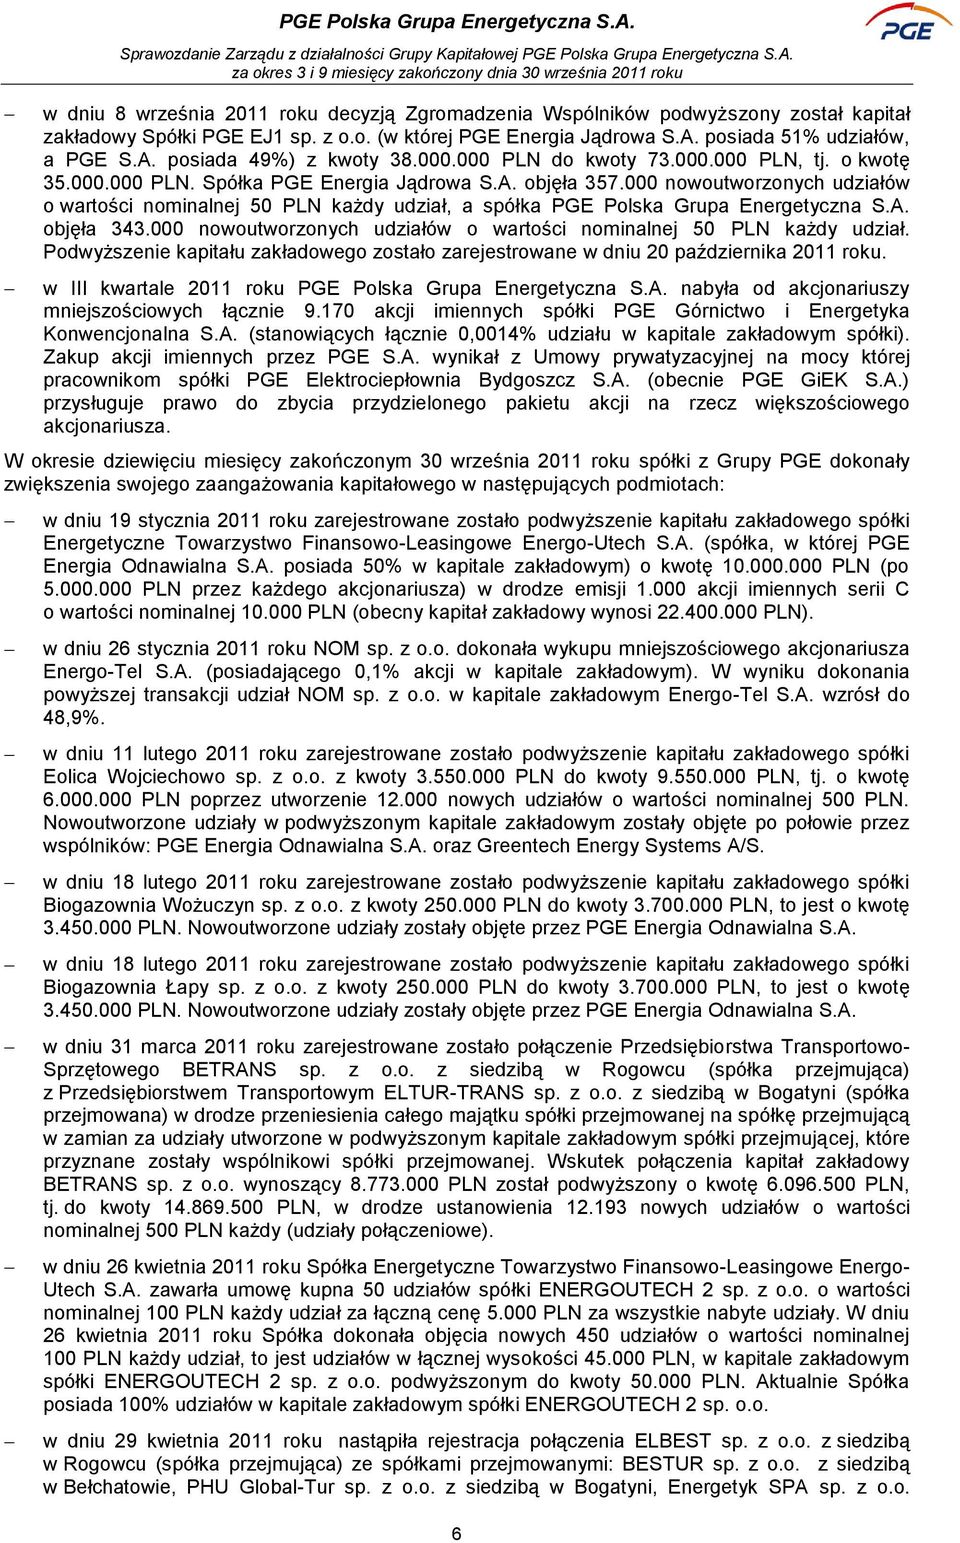 000 nowoutworzonych udziałów o wartości nominalnej 50 PLN każdy udział, a spółka PGE Polska Grupa Energetyczna S.A. objęła 343.000 nowoutworzonych udziałów o wartości nominalnej 50 PLN każdy udział. Podwyższenie kapitału zakładowego zostało zarejestrowane w dniu 20 października 2011 roku.